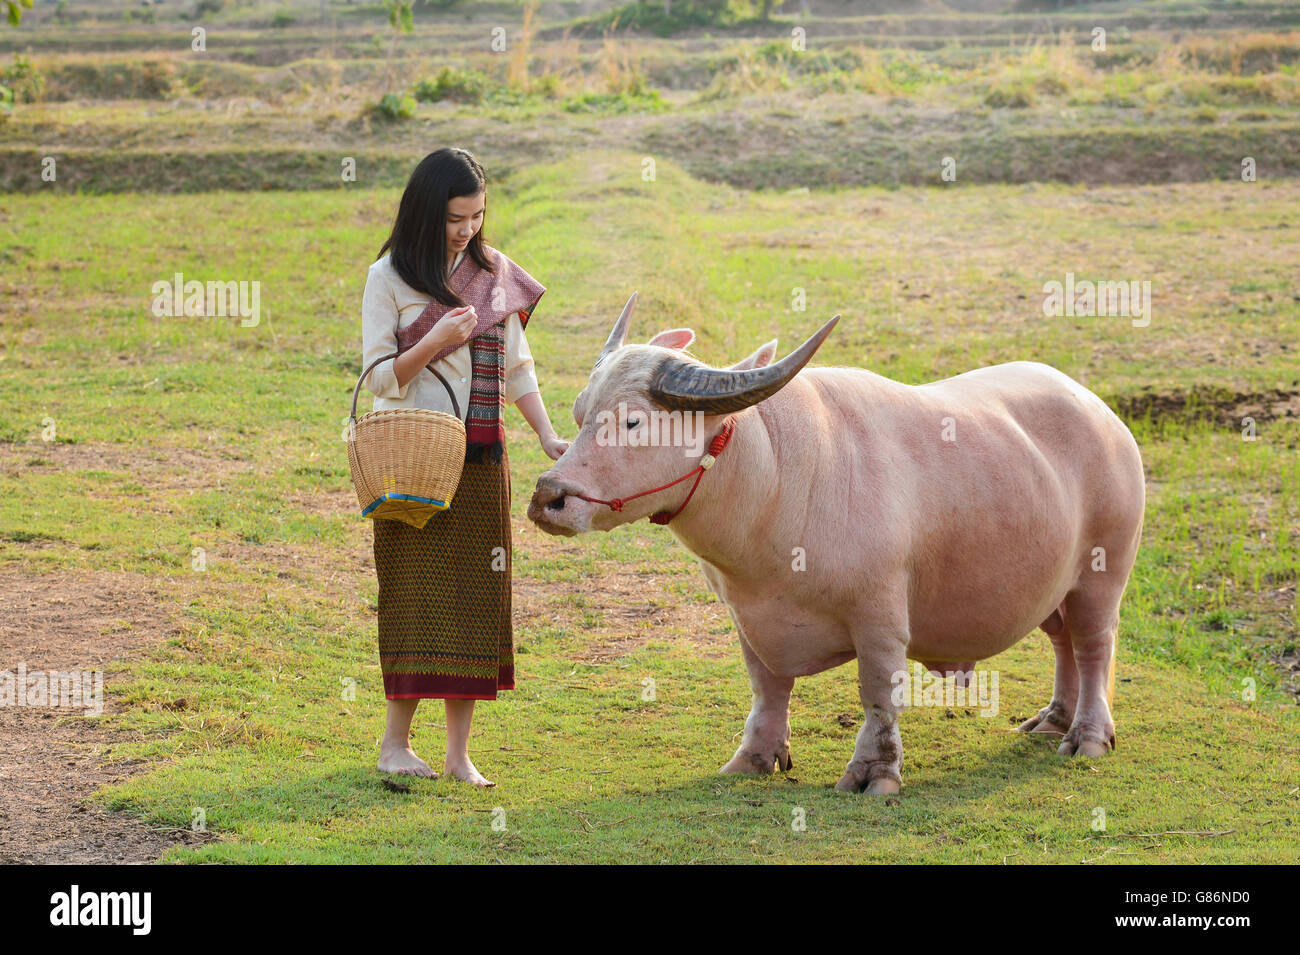 Par buffalo femme debout dans un champ, Thaïlande Banque D'Images